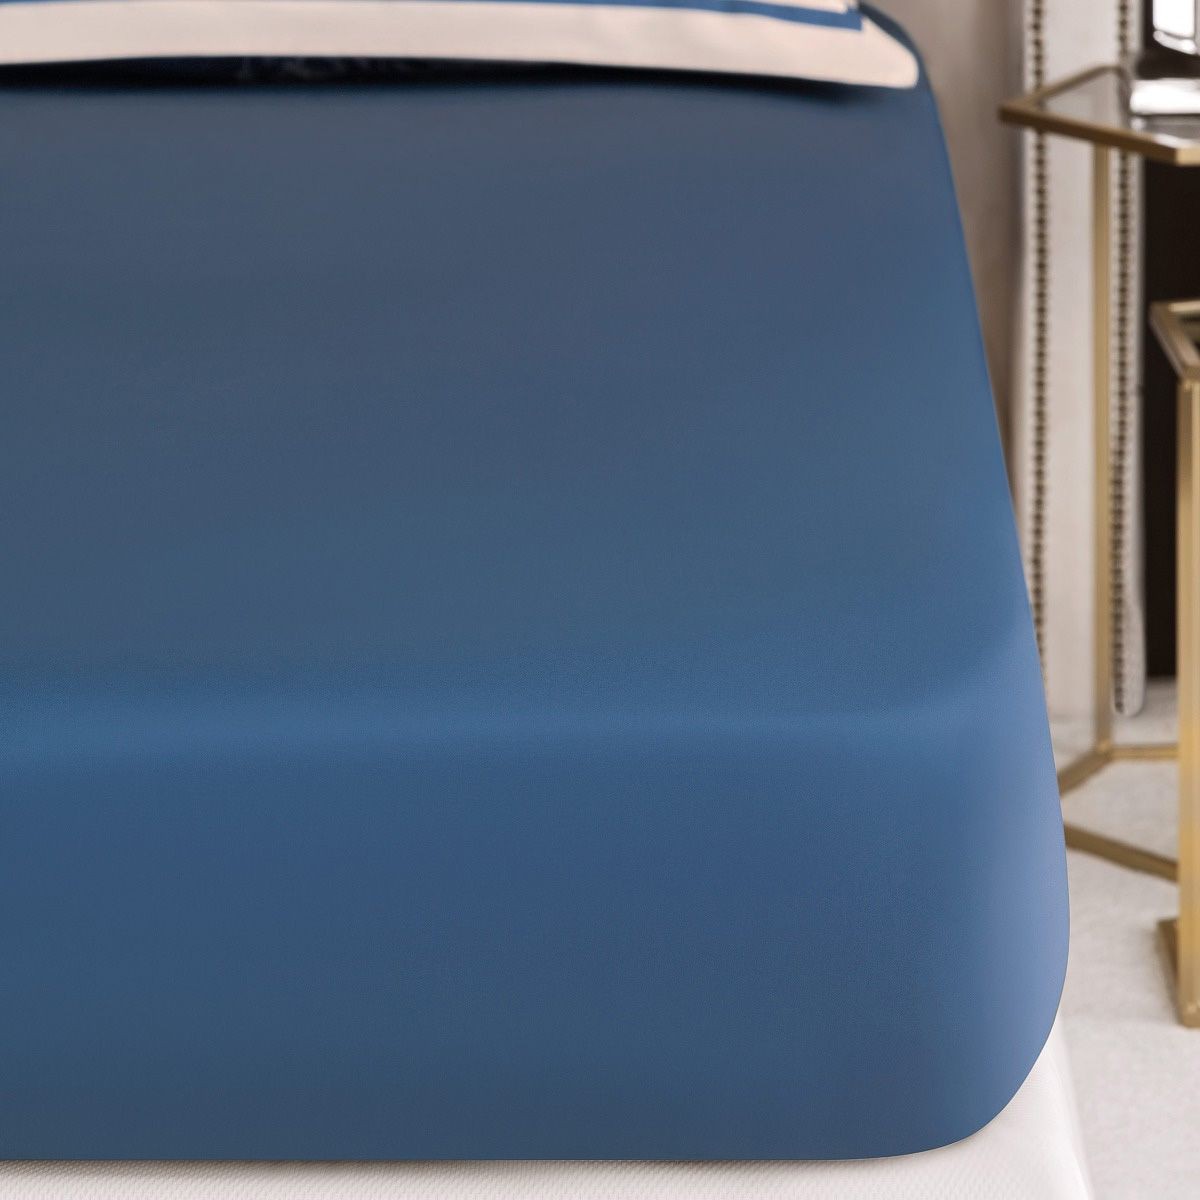 Простыня на резинке Фонтени: цвет: синий, коричневый (180х200), размер 180х200 tgs921231 Простыня на резинке Фонтени: цвет: синий, коричневый (180х200) - фото 1